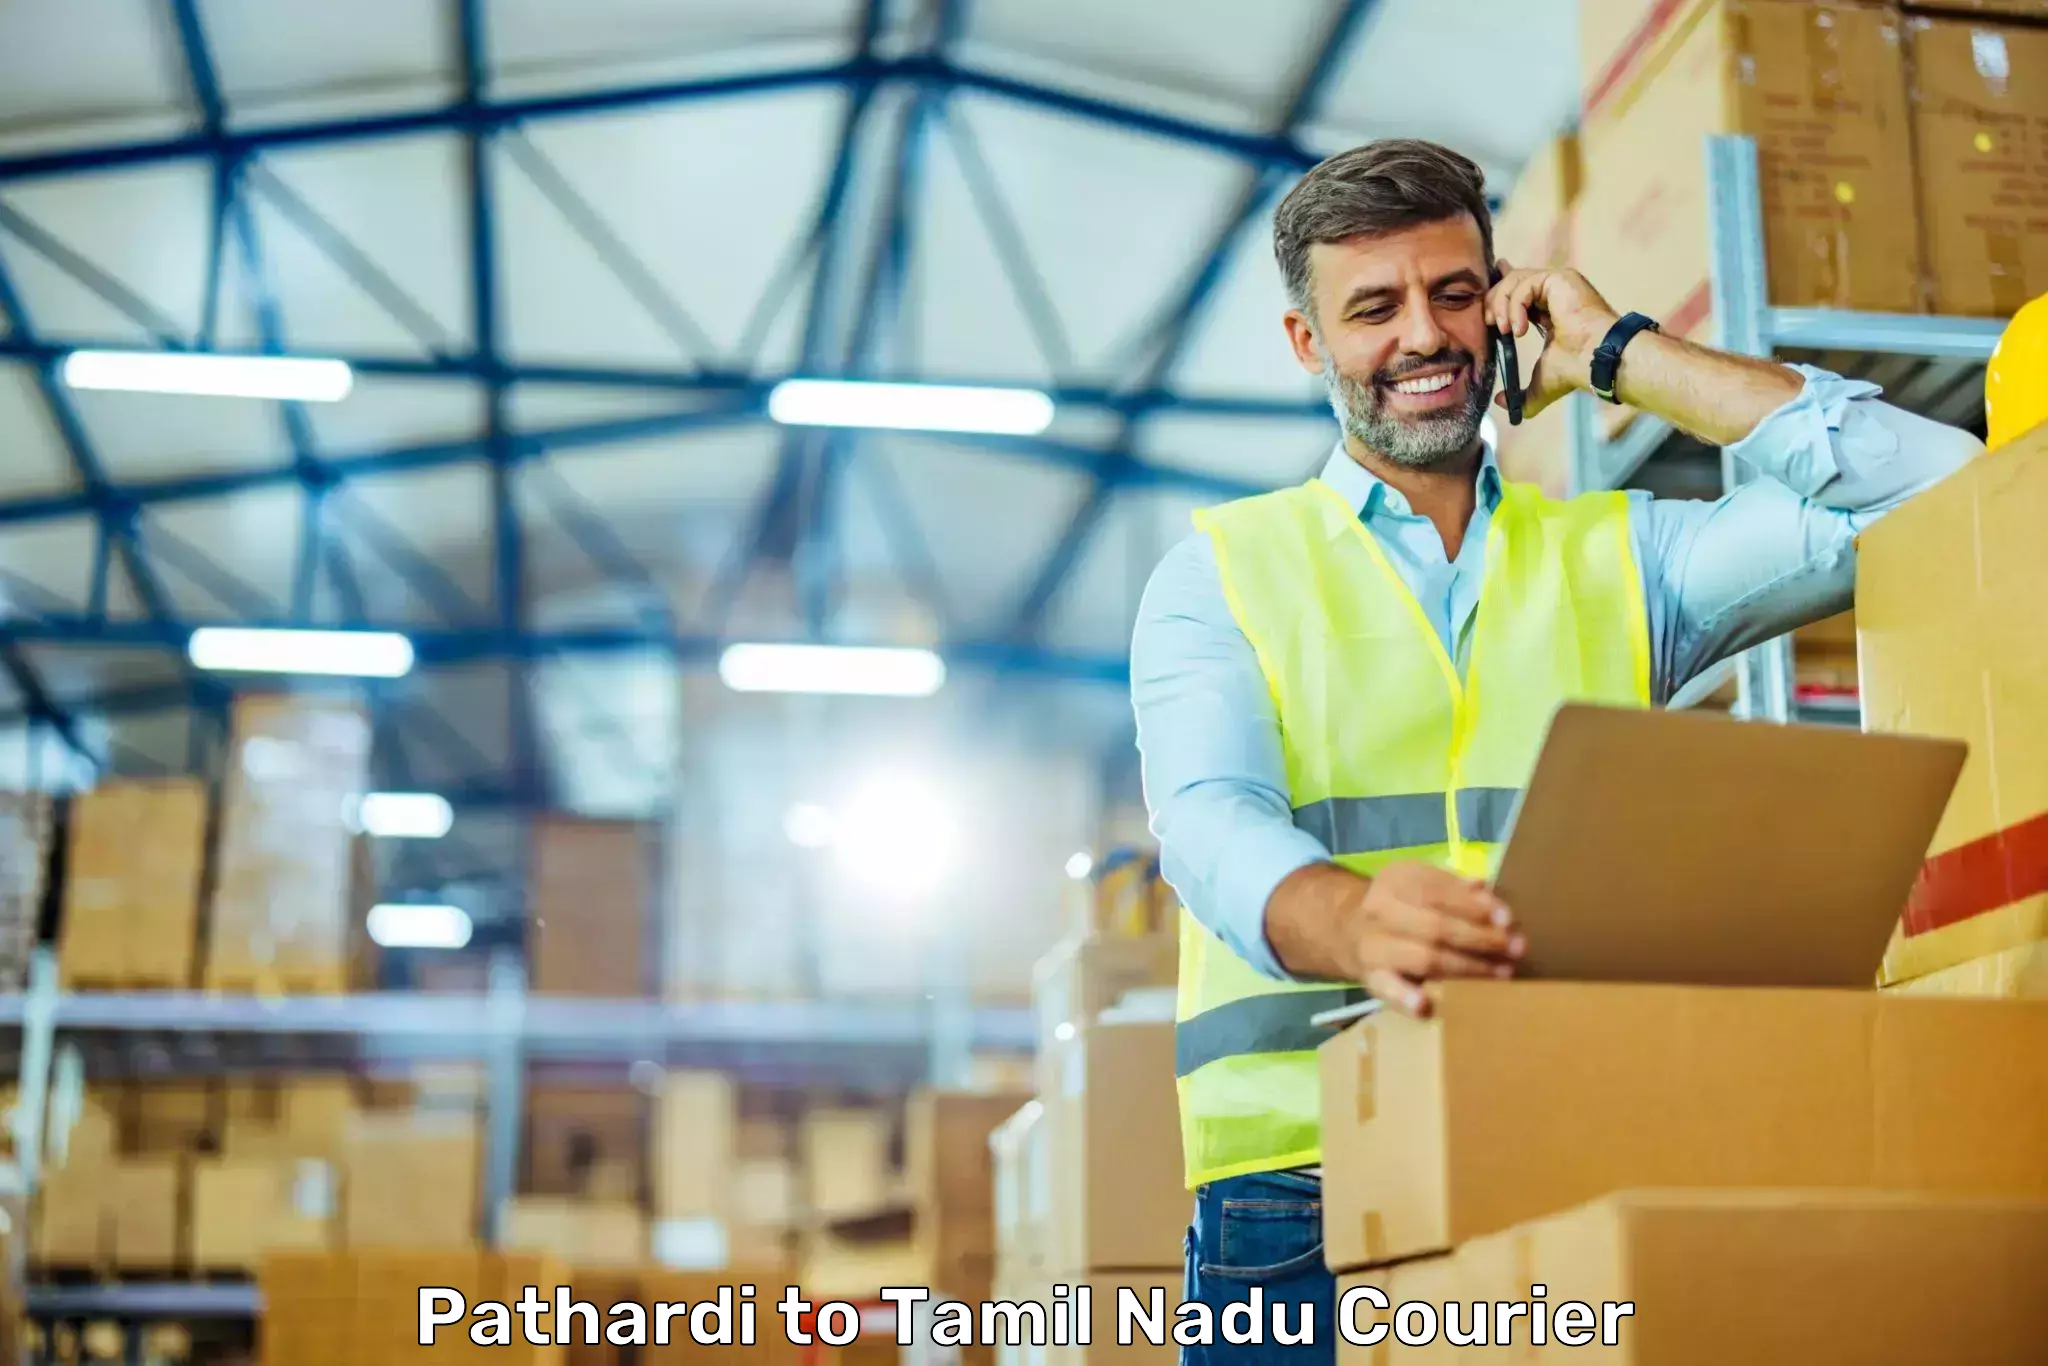 Urgent courier needs Pathardi to Vriddhachalam